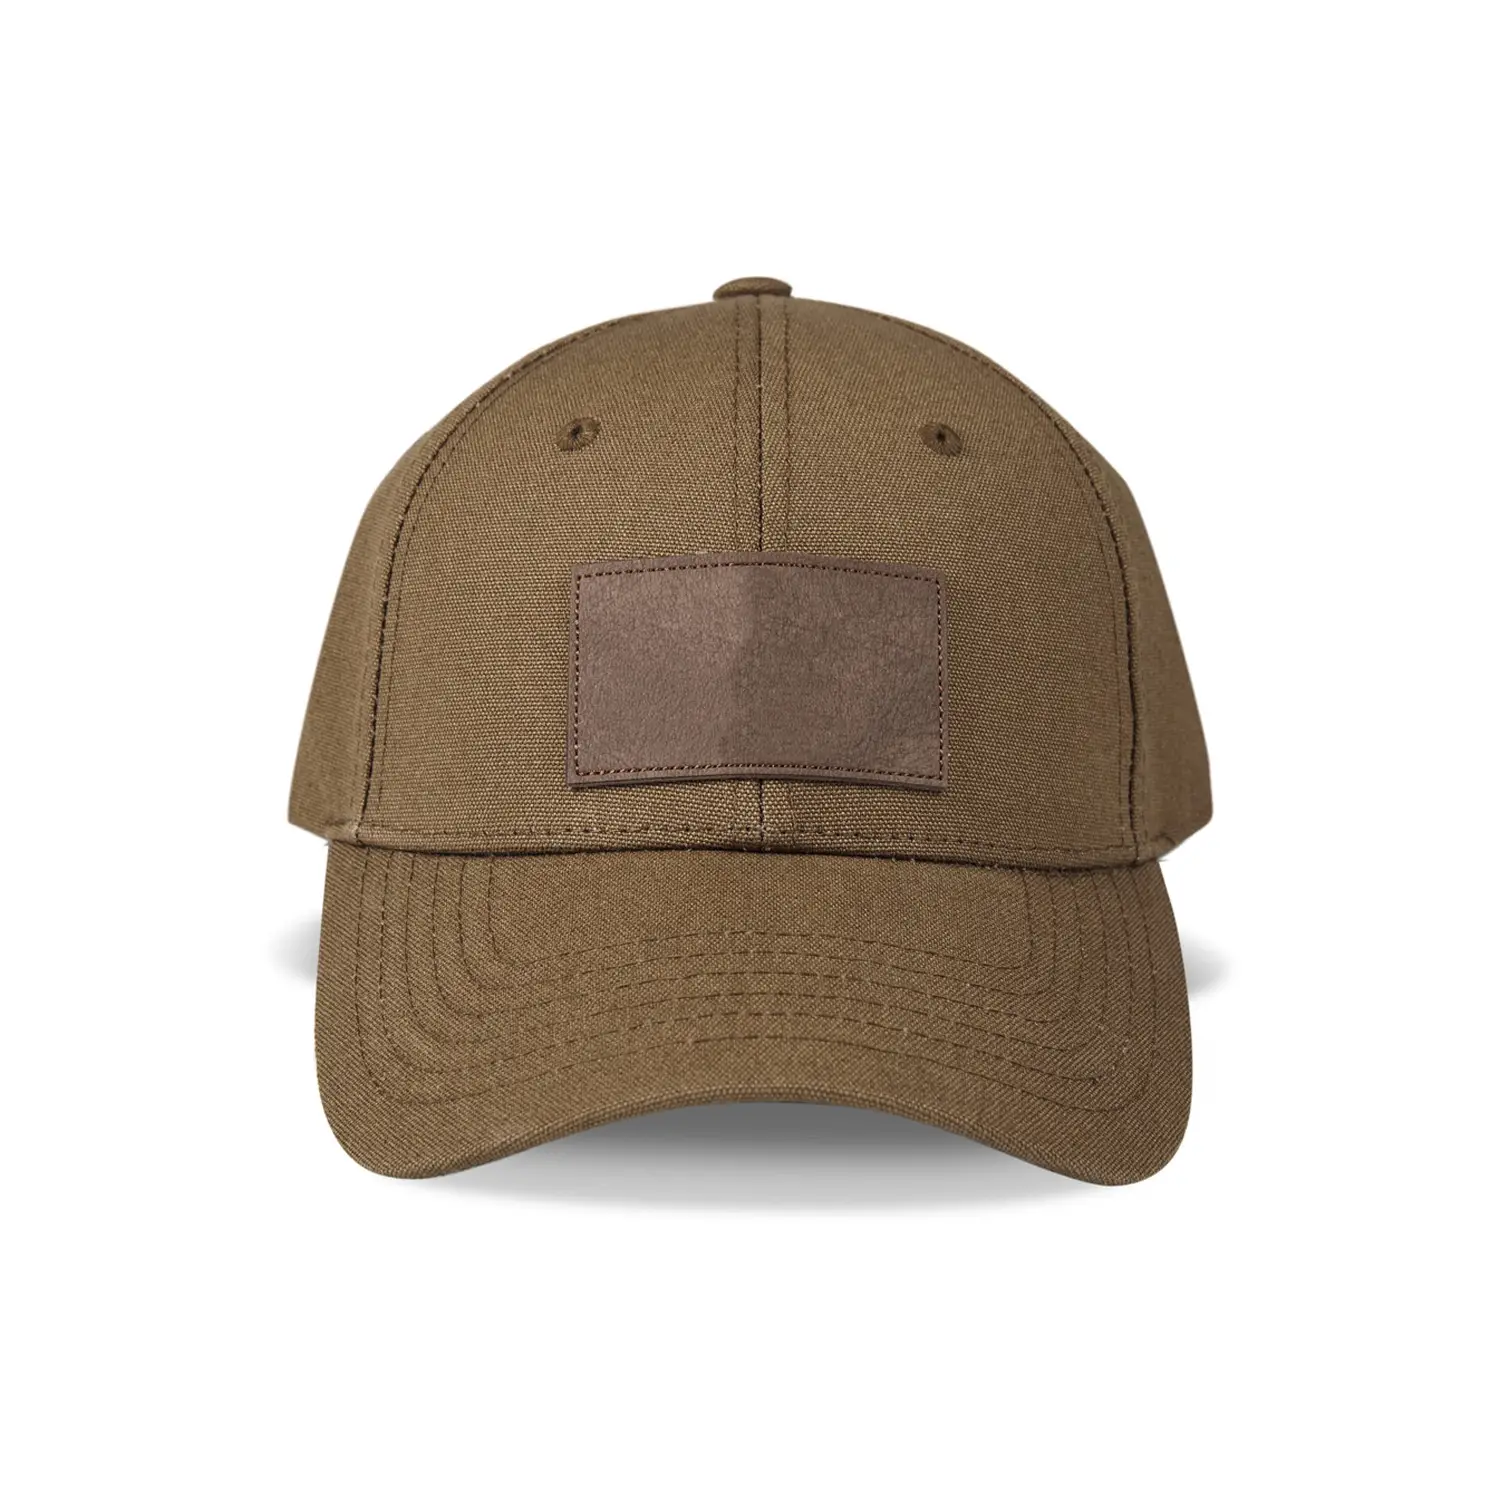 사용자 정의 로고 조정 가능한 야외 프로모션 야구 모자 광고 모자 인쇄 자수 스포츠 모자